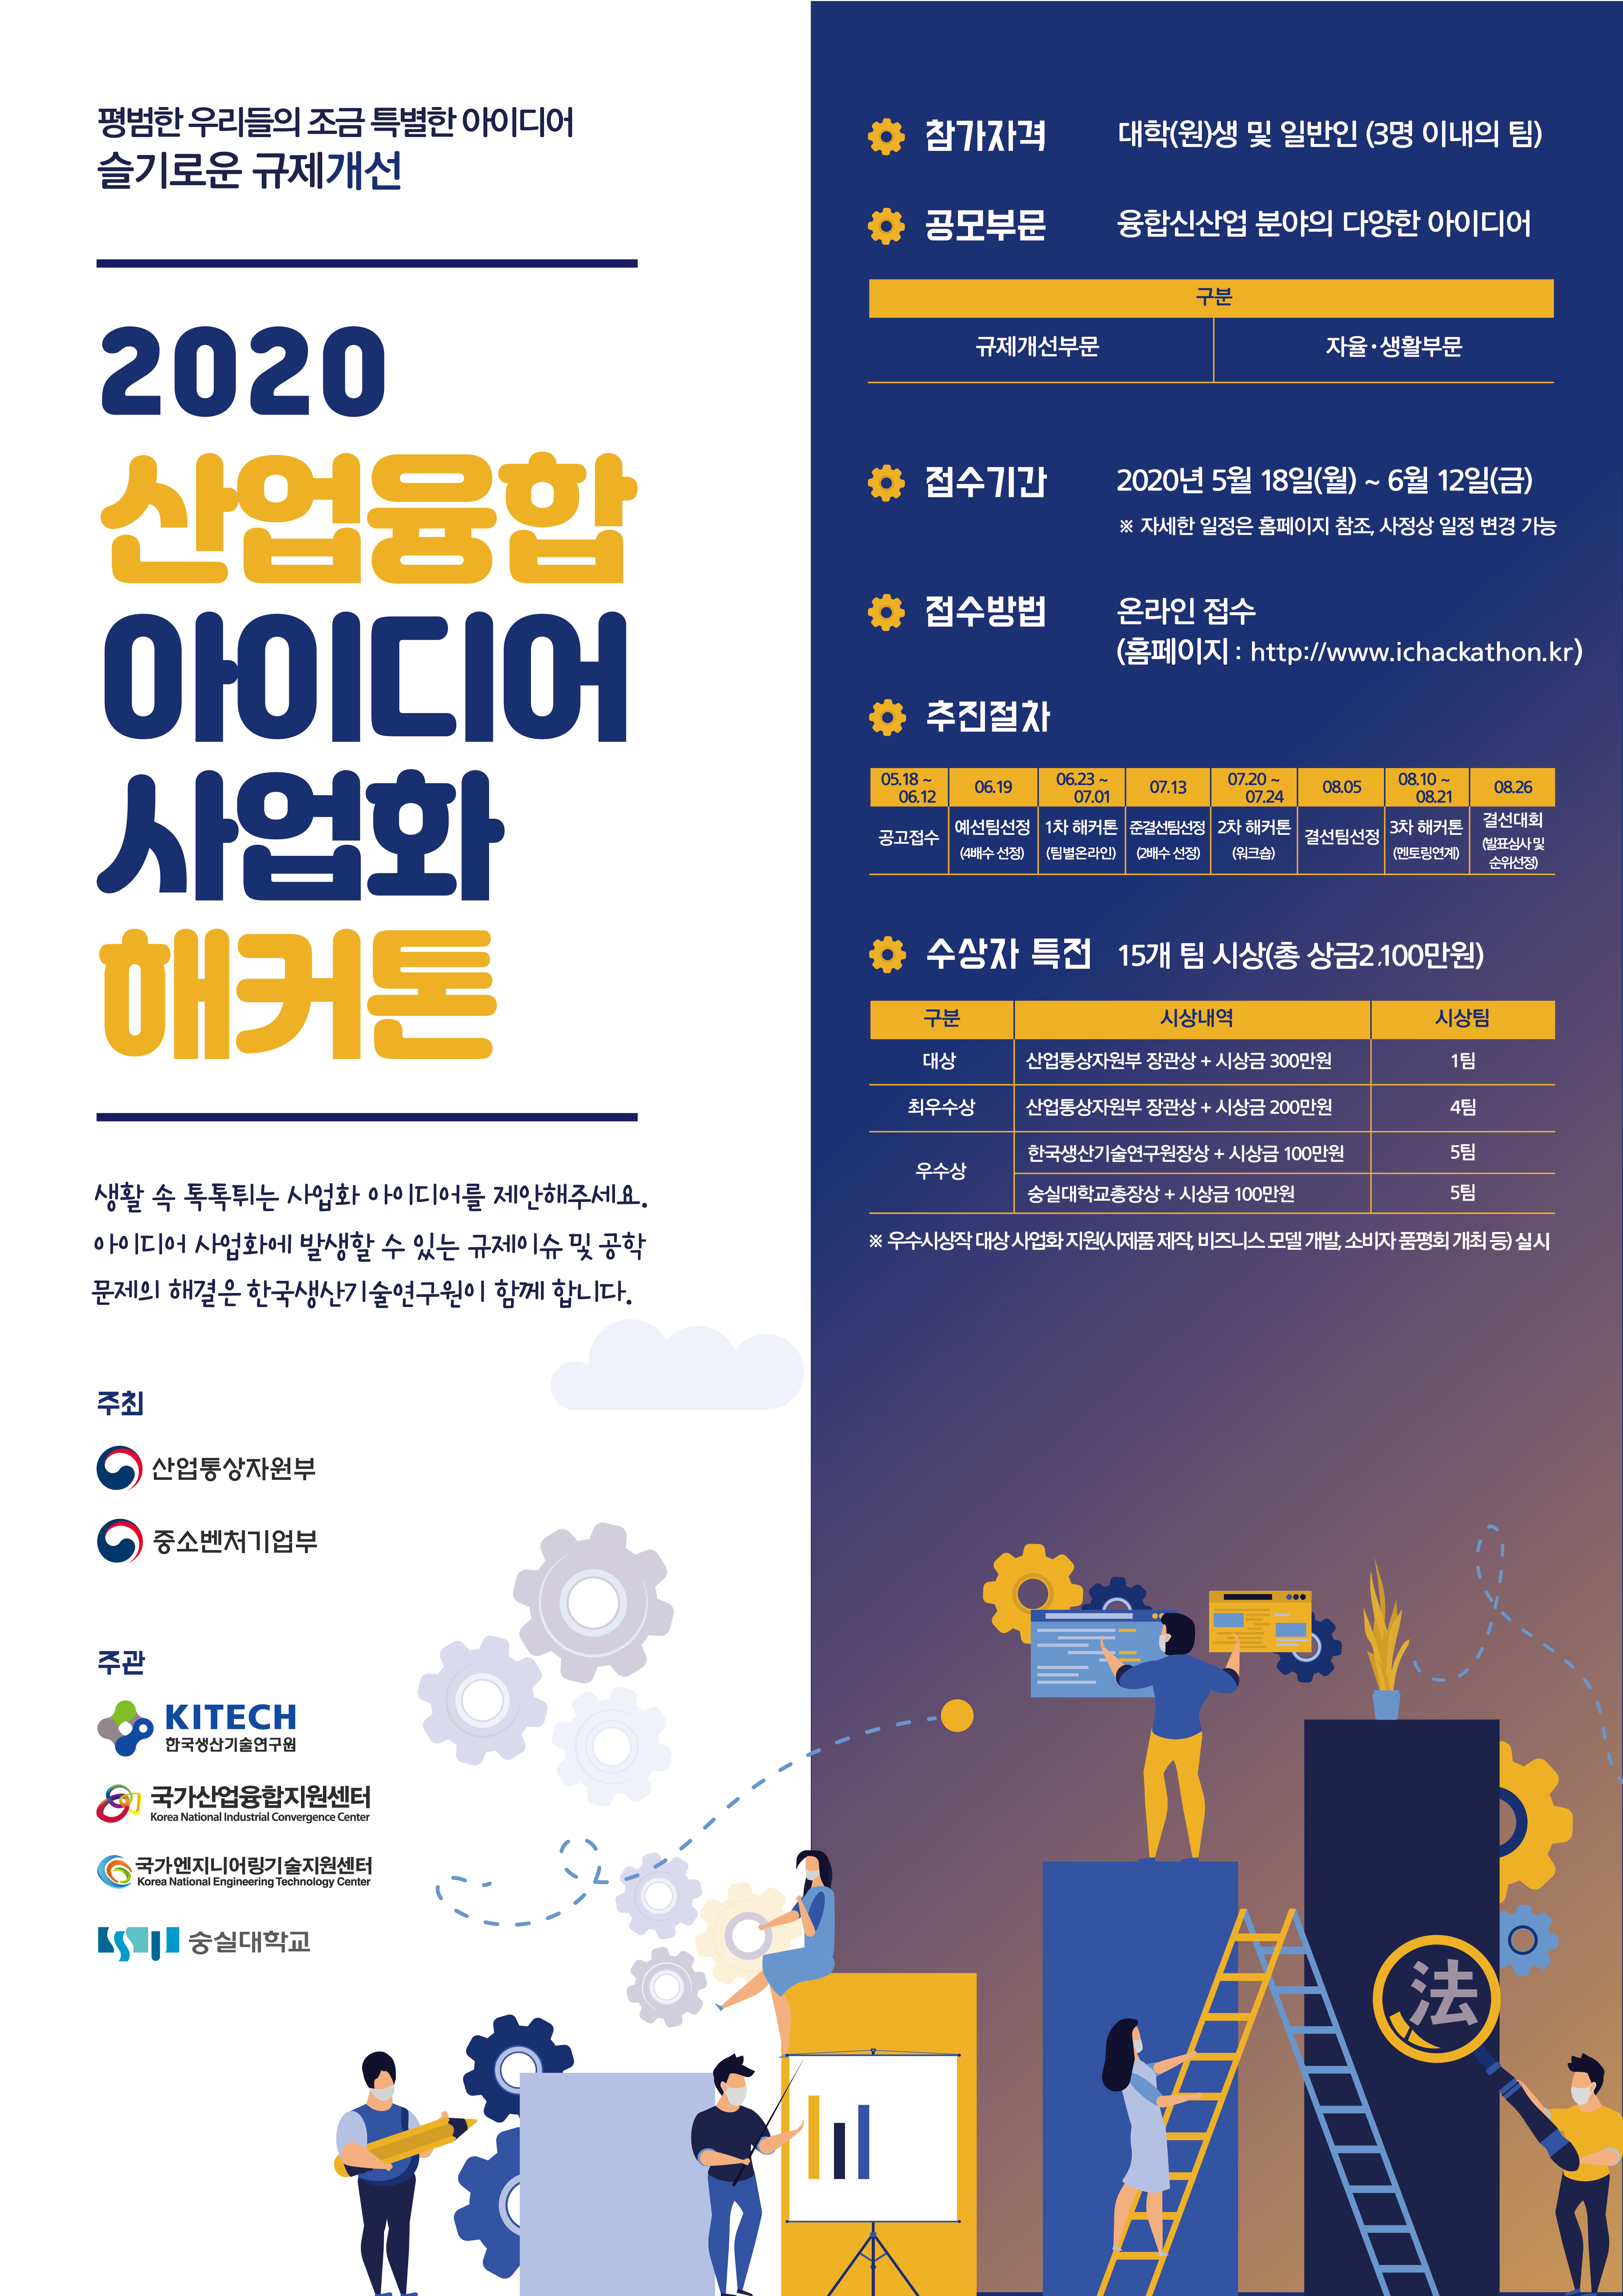 [첨부자료1] 2020 산업융합 아이디어 사업화 해커톤 홍보포스터